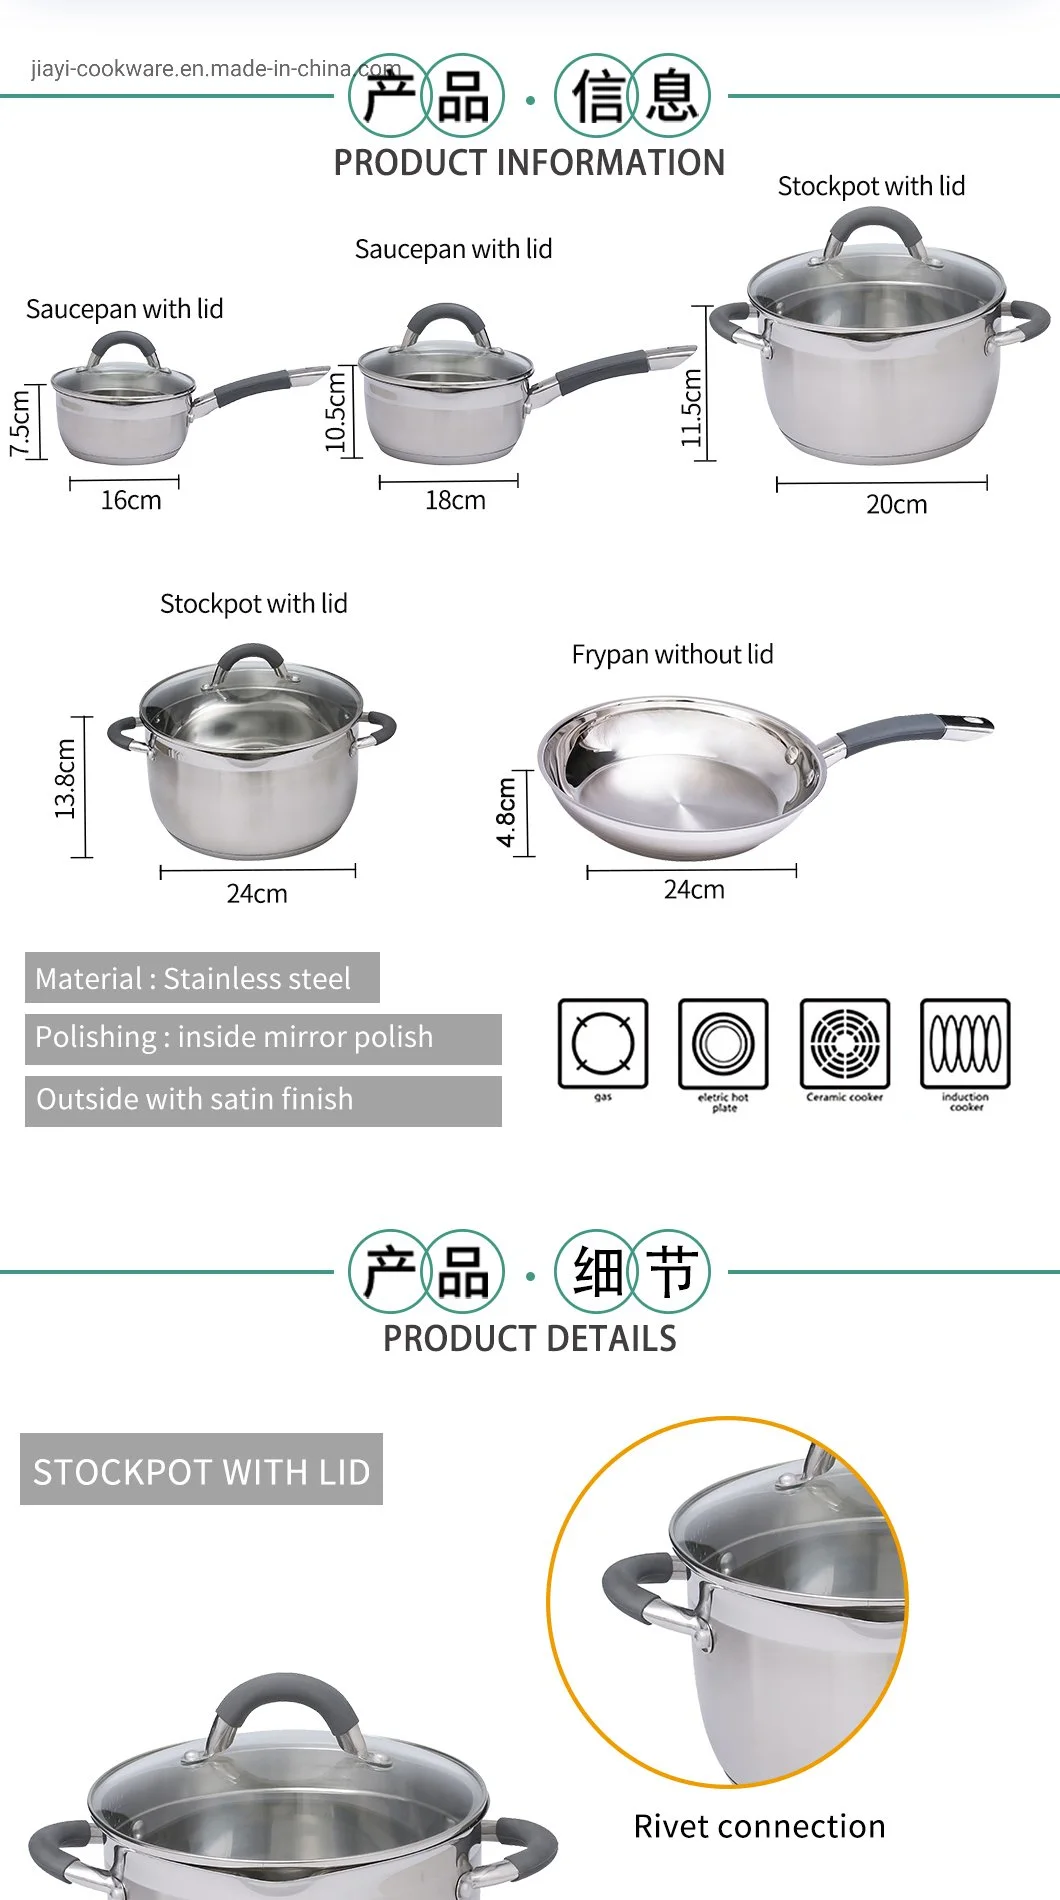 Juego de utensilios de cocina de inducción de acero inoxidable multifuncional de fábrica real / juego de olla común / olla de cocina